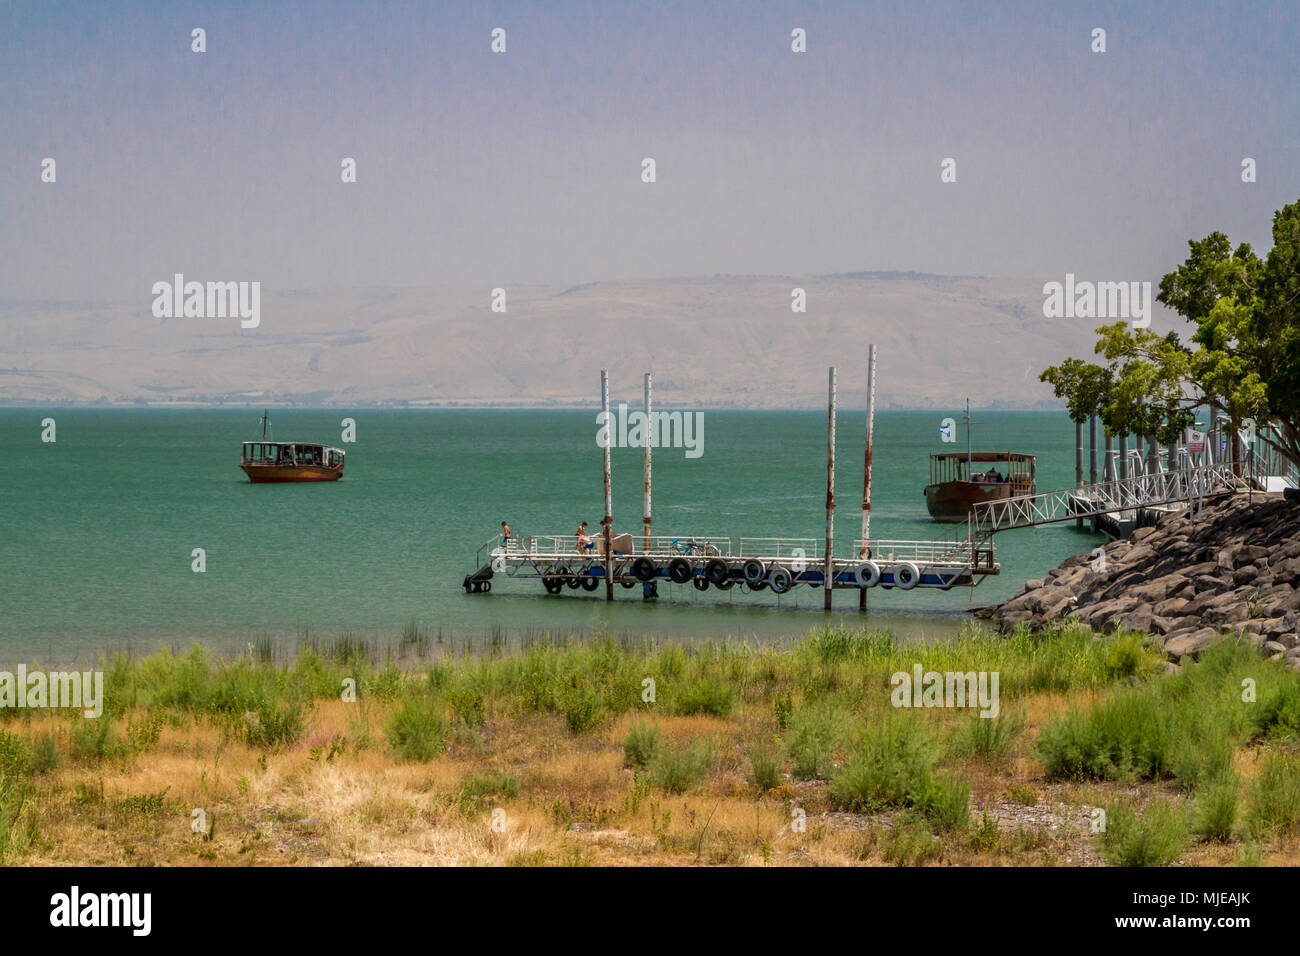 La côte de la mer de Galilée, près de l'église de la primauté de Saint Pierre, Tabgha, Israël. Banque D'Images